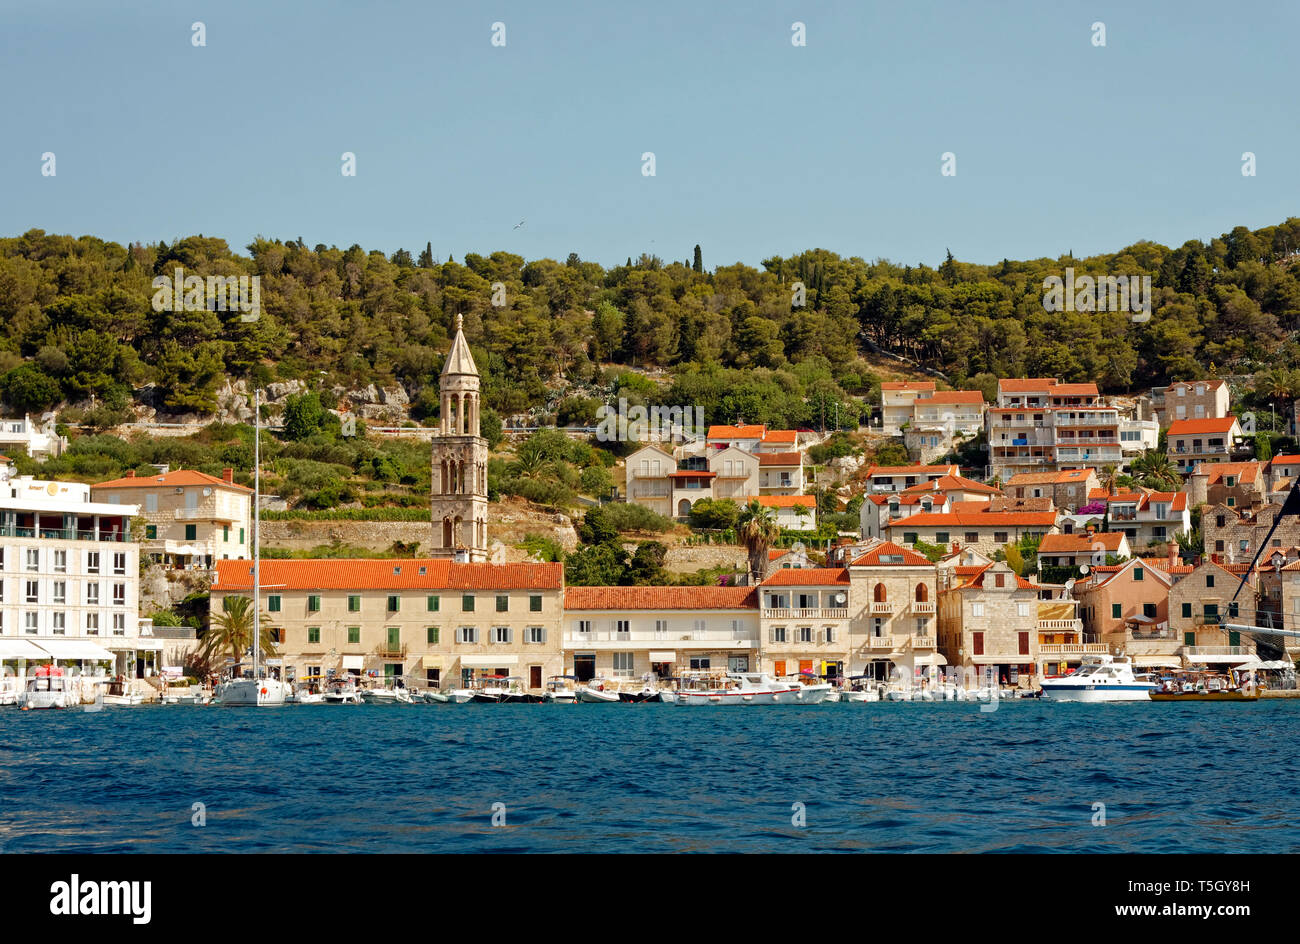 La città di Lesina visto dal mare Adriatico; scena costiere, edifici; barche; hillside; Hvar, Croazia; Europa; estate, orizzontale Foto Stock